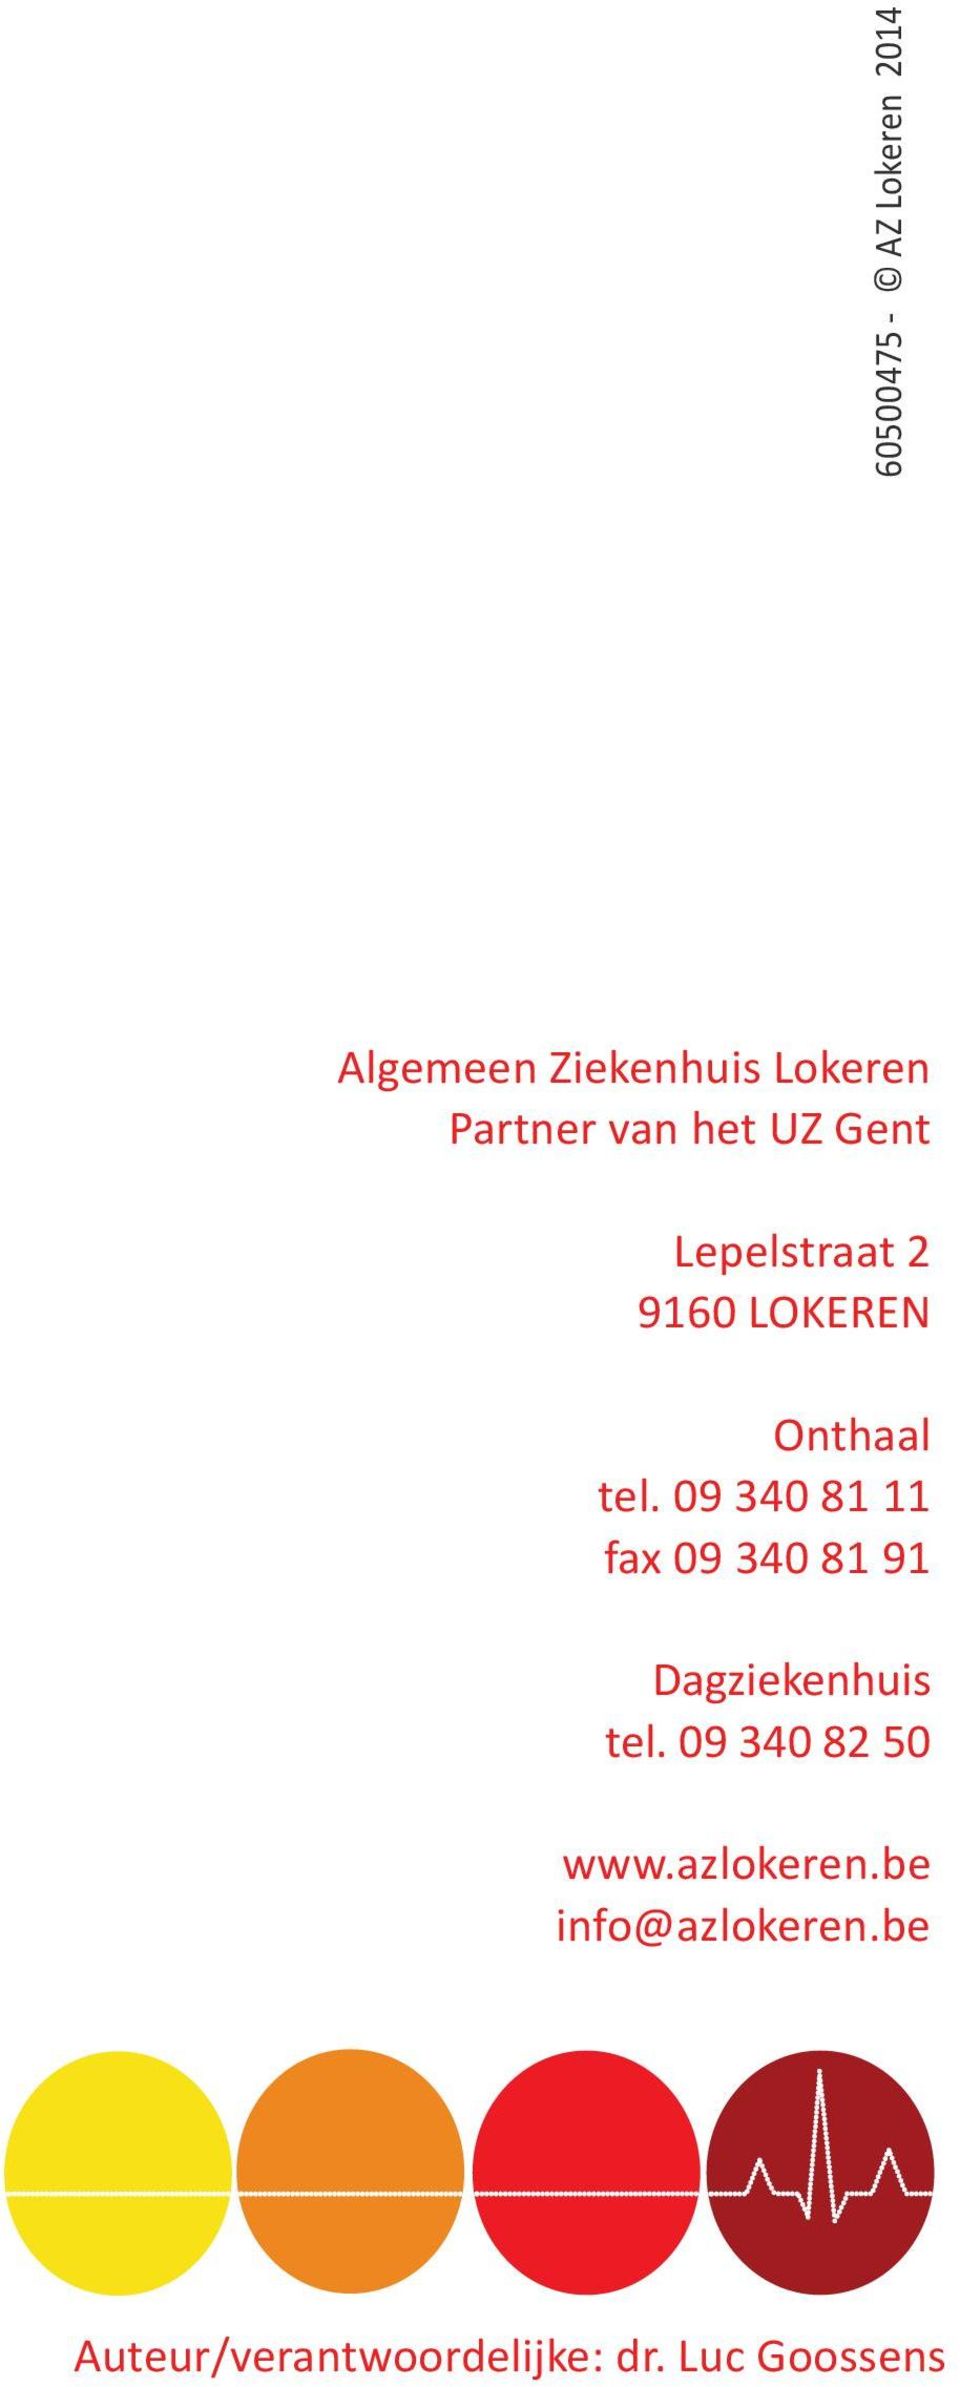 09 340 81 11 fax 09 340 81 91 Dagziekenhuis tel.